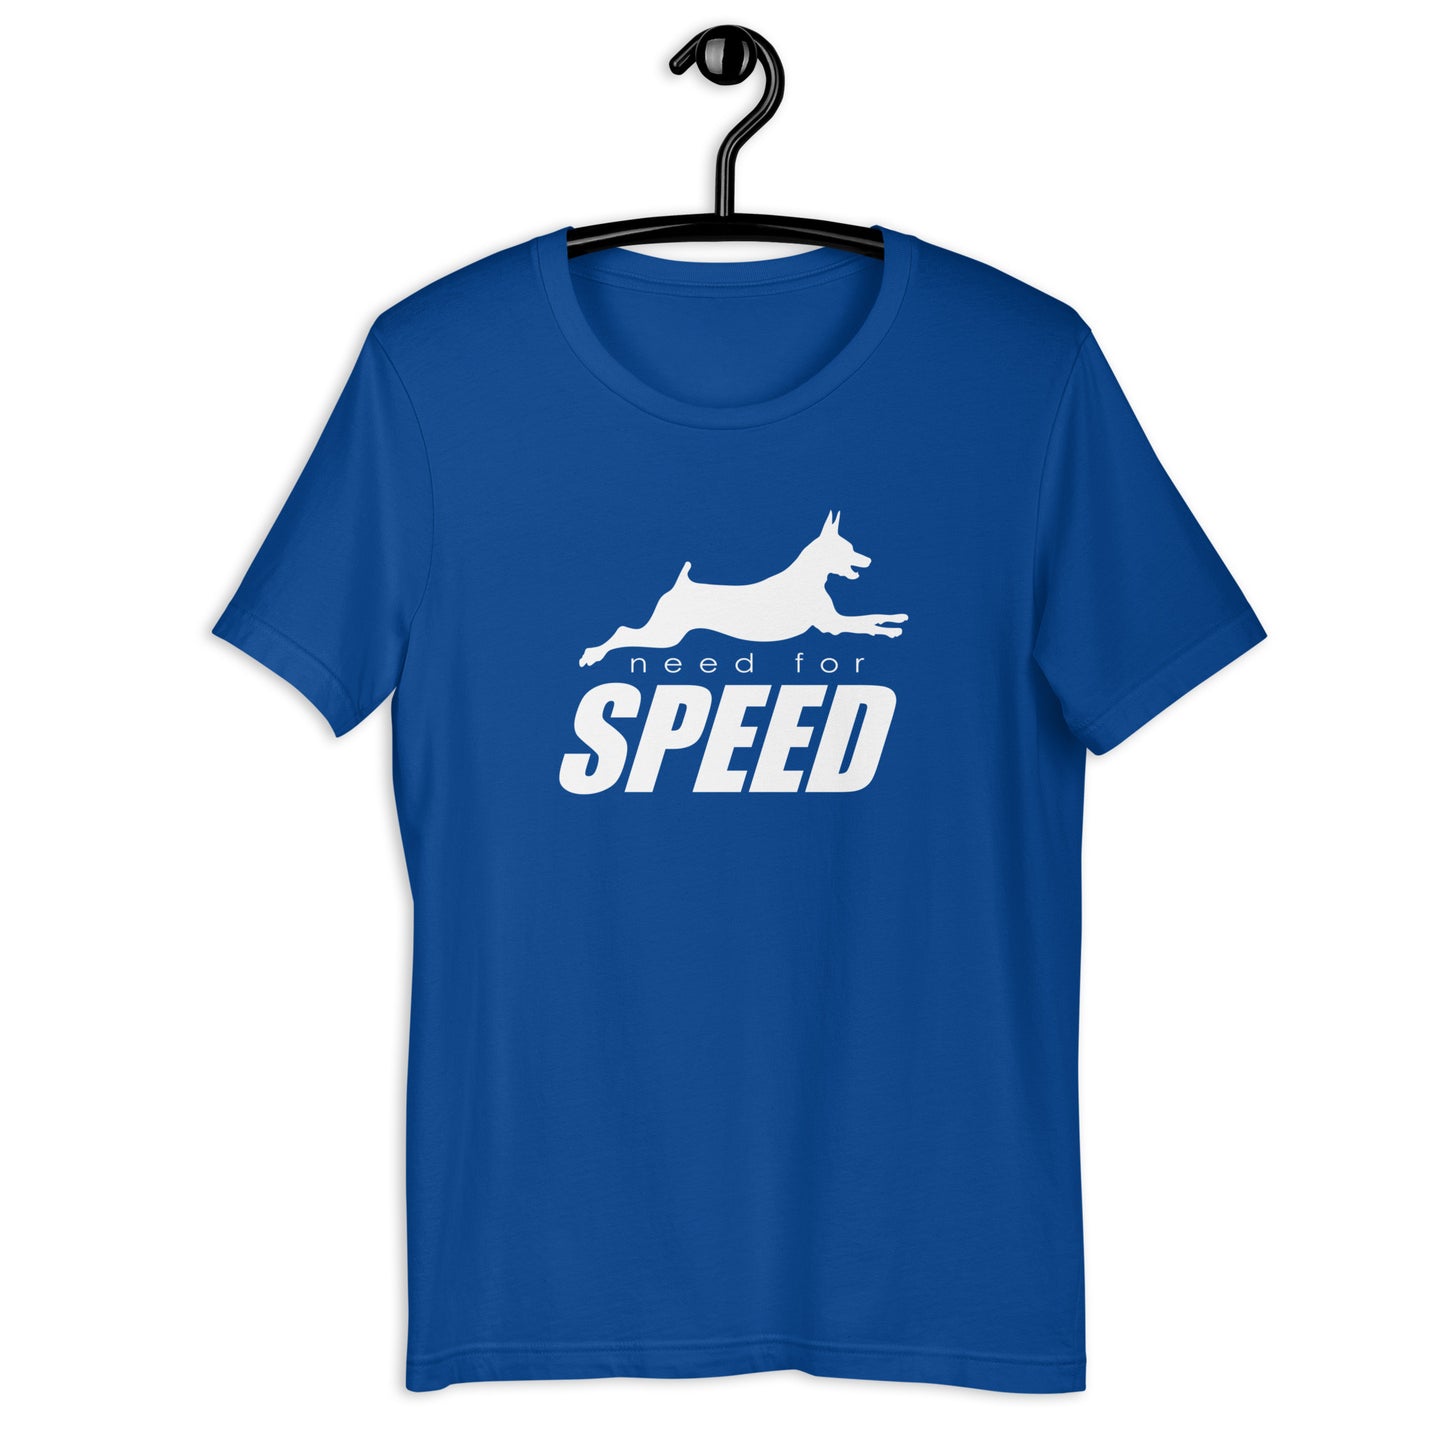 NEED FOR SPEED - Min Pinscher  - Unisex t-shirt